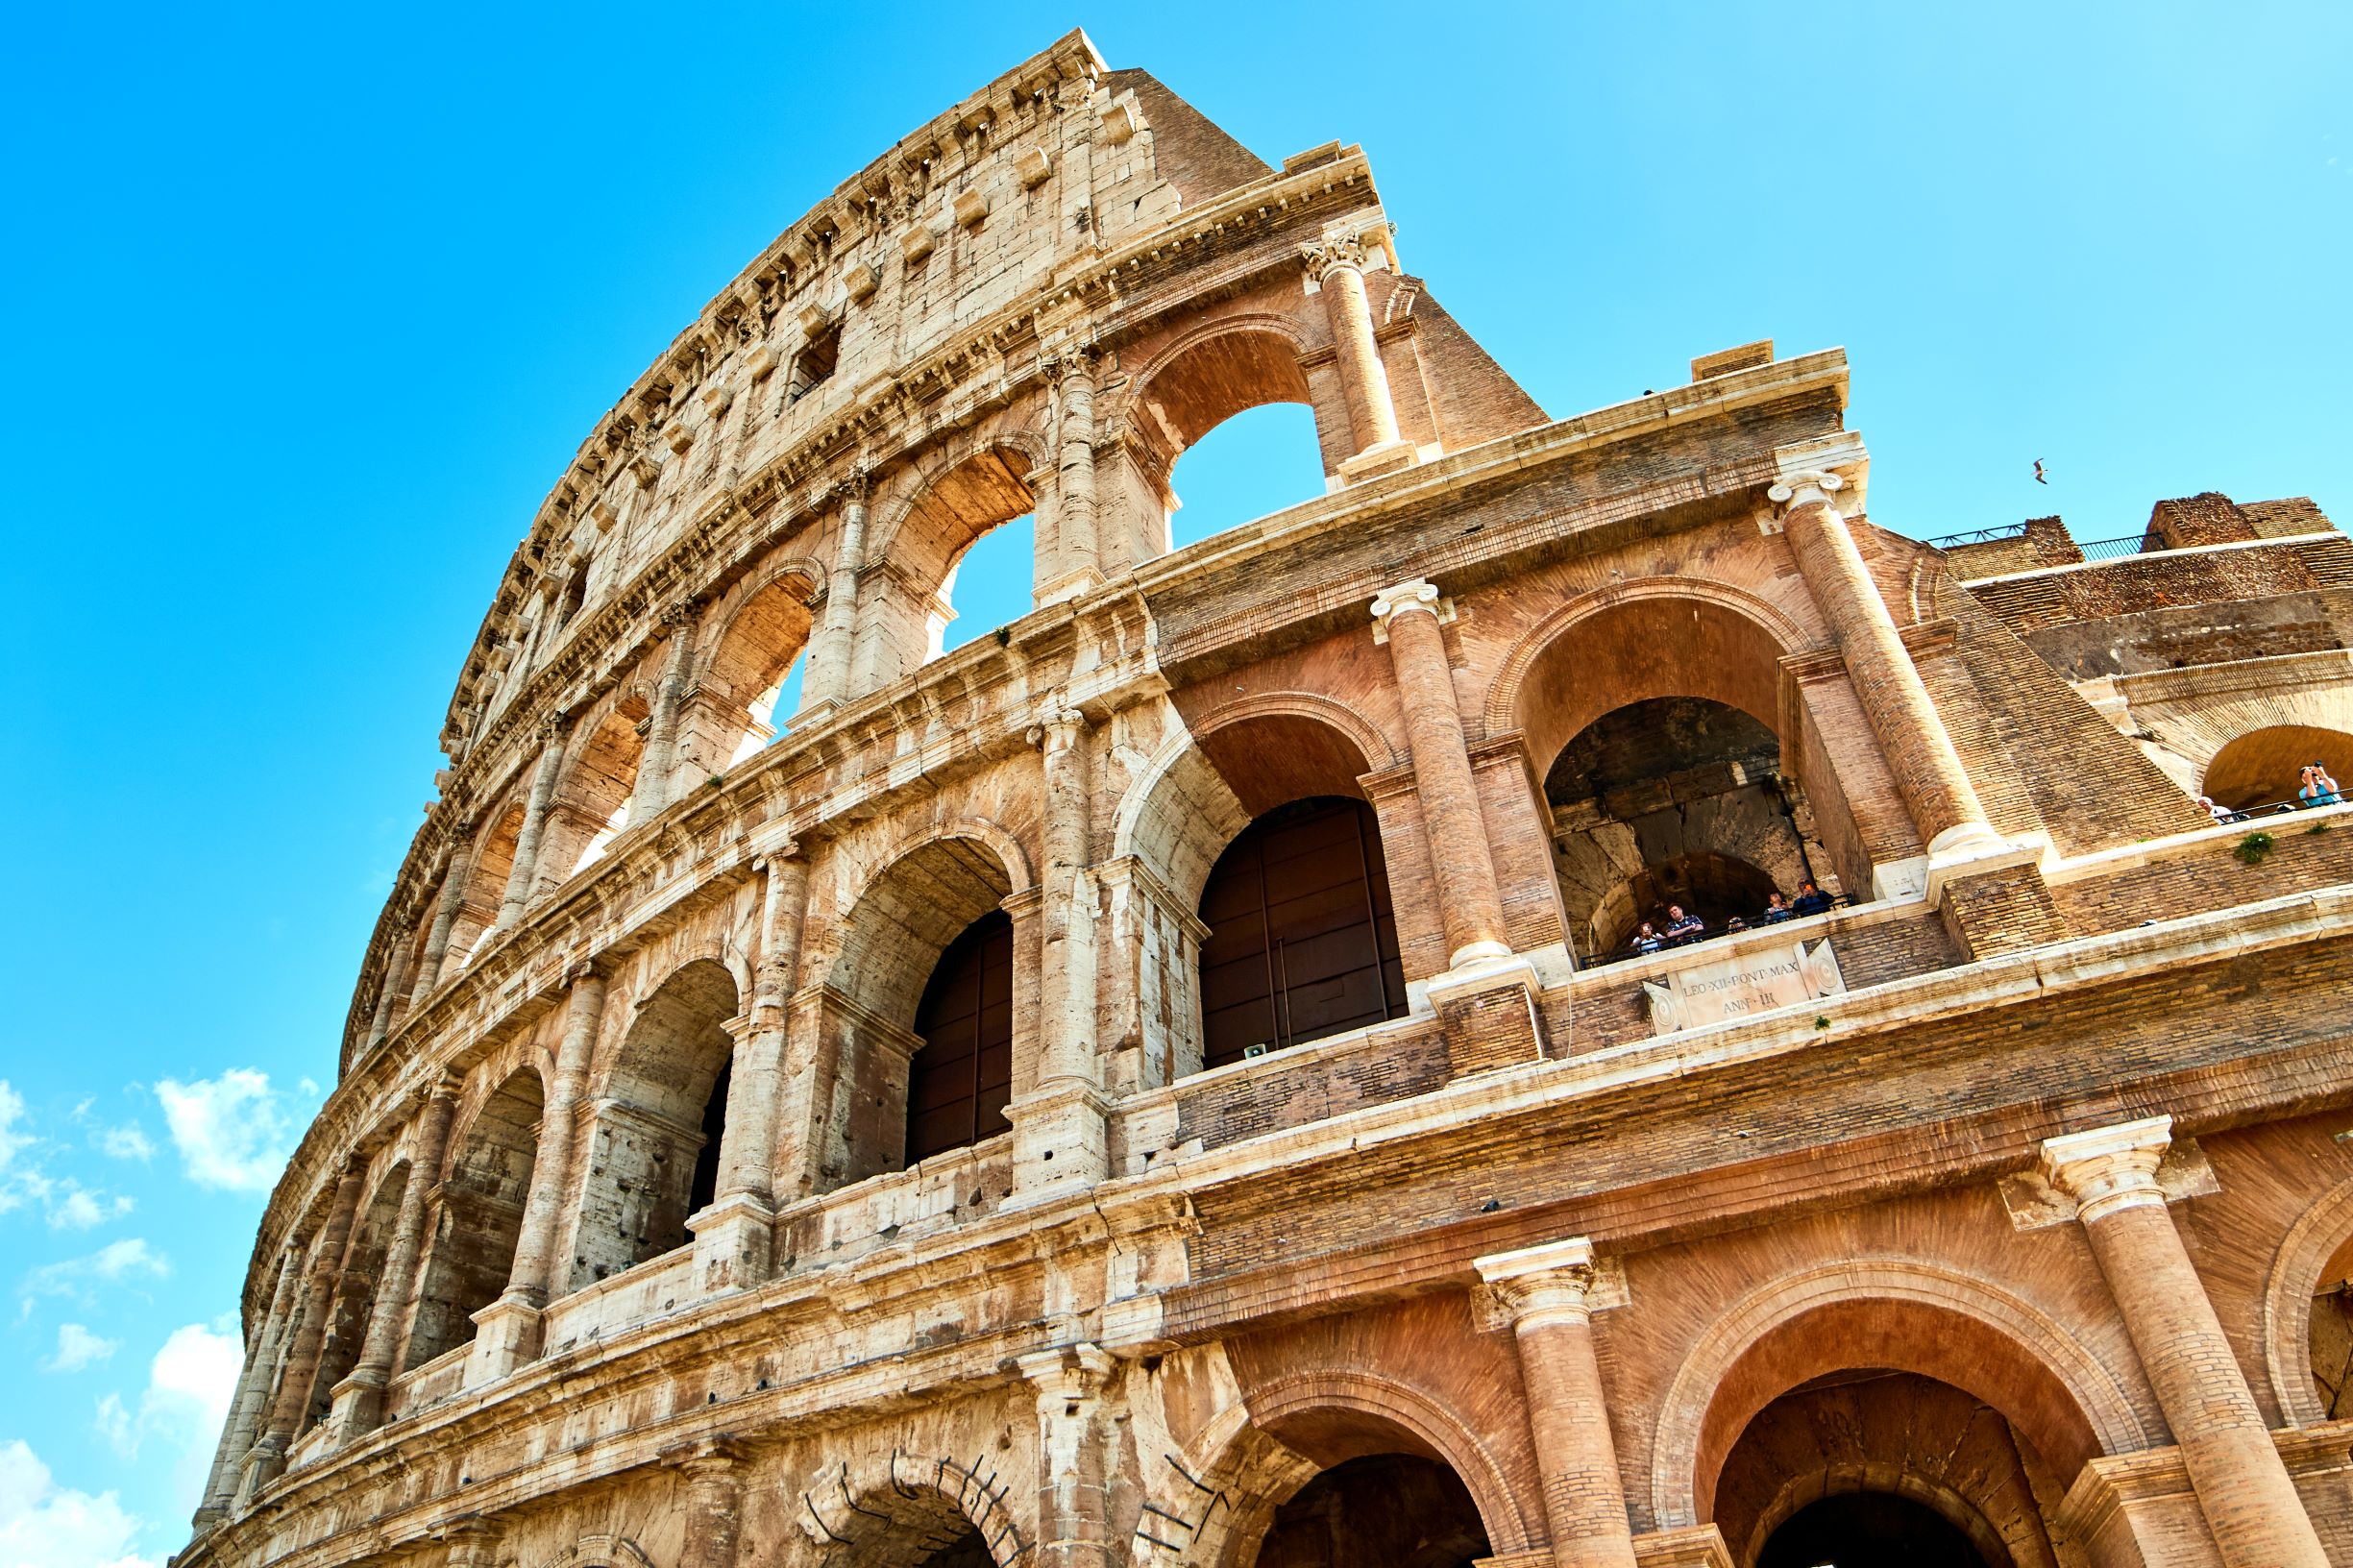 Đấu trường La Mã là điểm dừng chân không thể bỏ qua khi du lịch tại Ý.